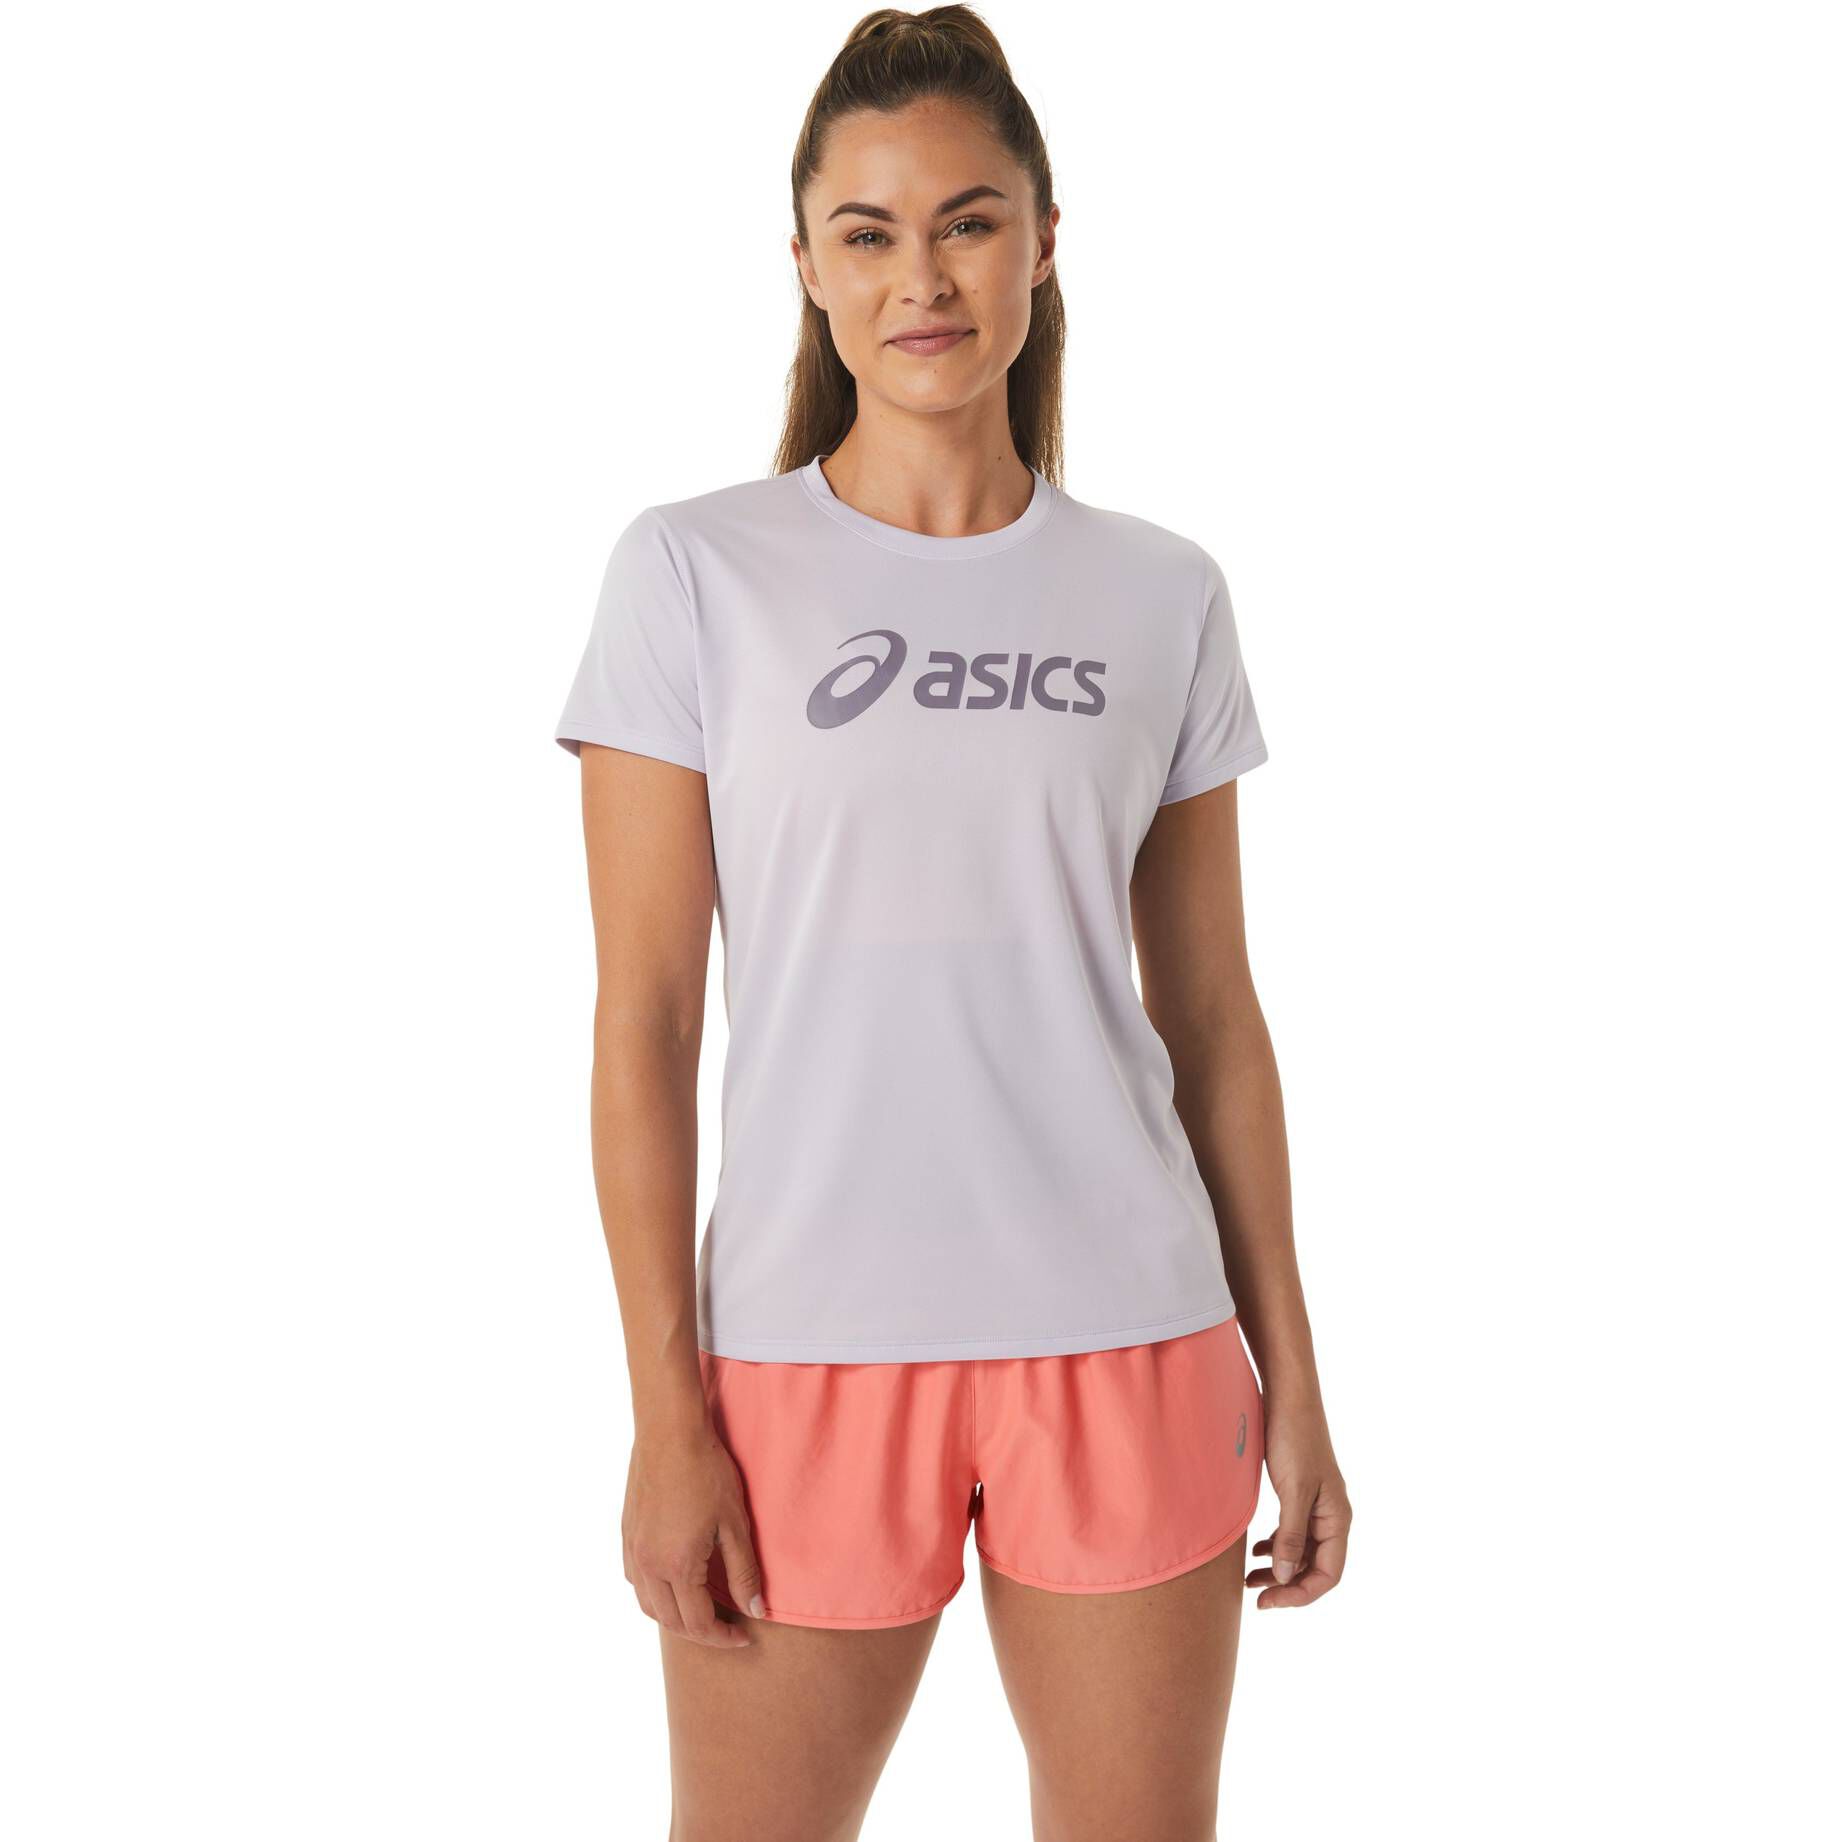 Damen Laufshirt engelhorn kaufen Asics | CORE